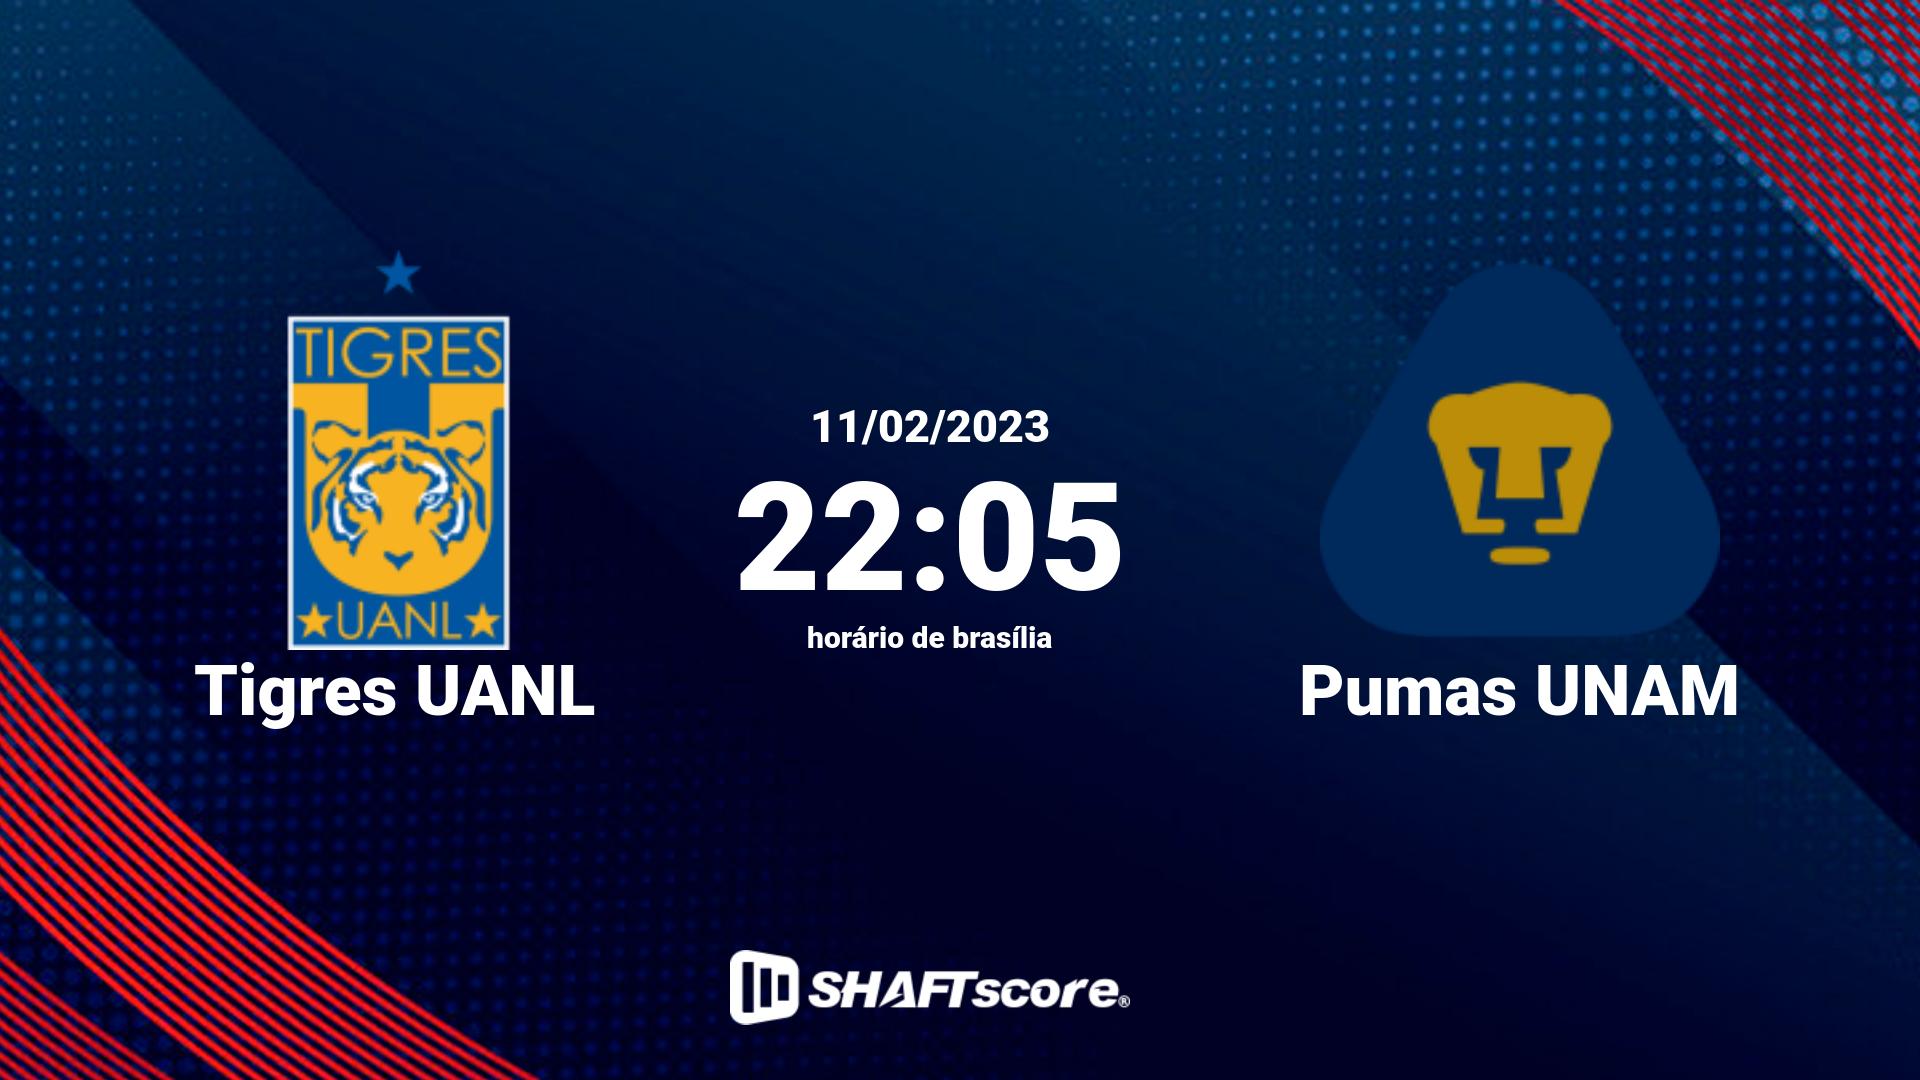 Estatísticas do jogo Tigres UANL vs Pumas UNAM 11.02 22:05